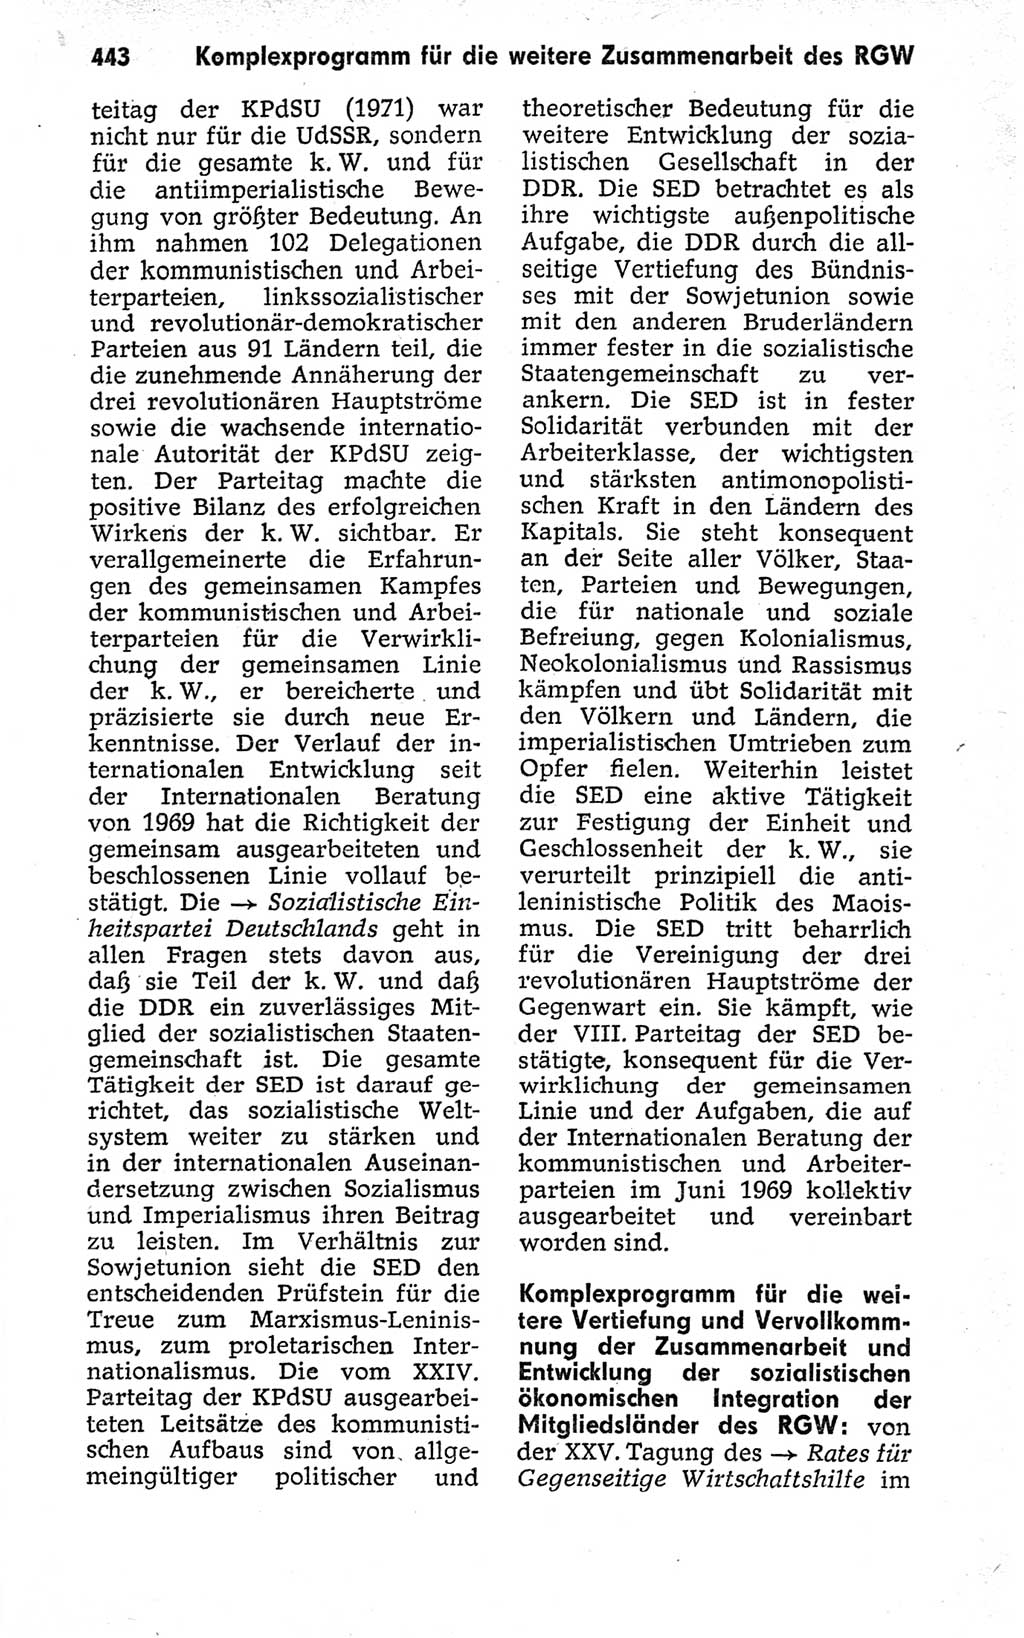 Kleines politisches Wörterbuch [Deutsche Demokratische Republik (DDR)] 1973, Seite 443 (Kl. pol. Wb. DDR 1973, S. 443)